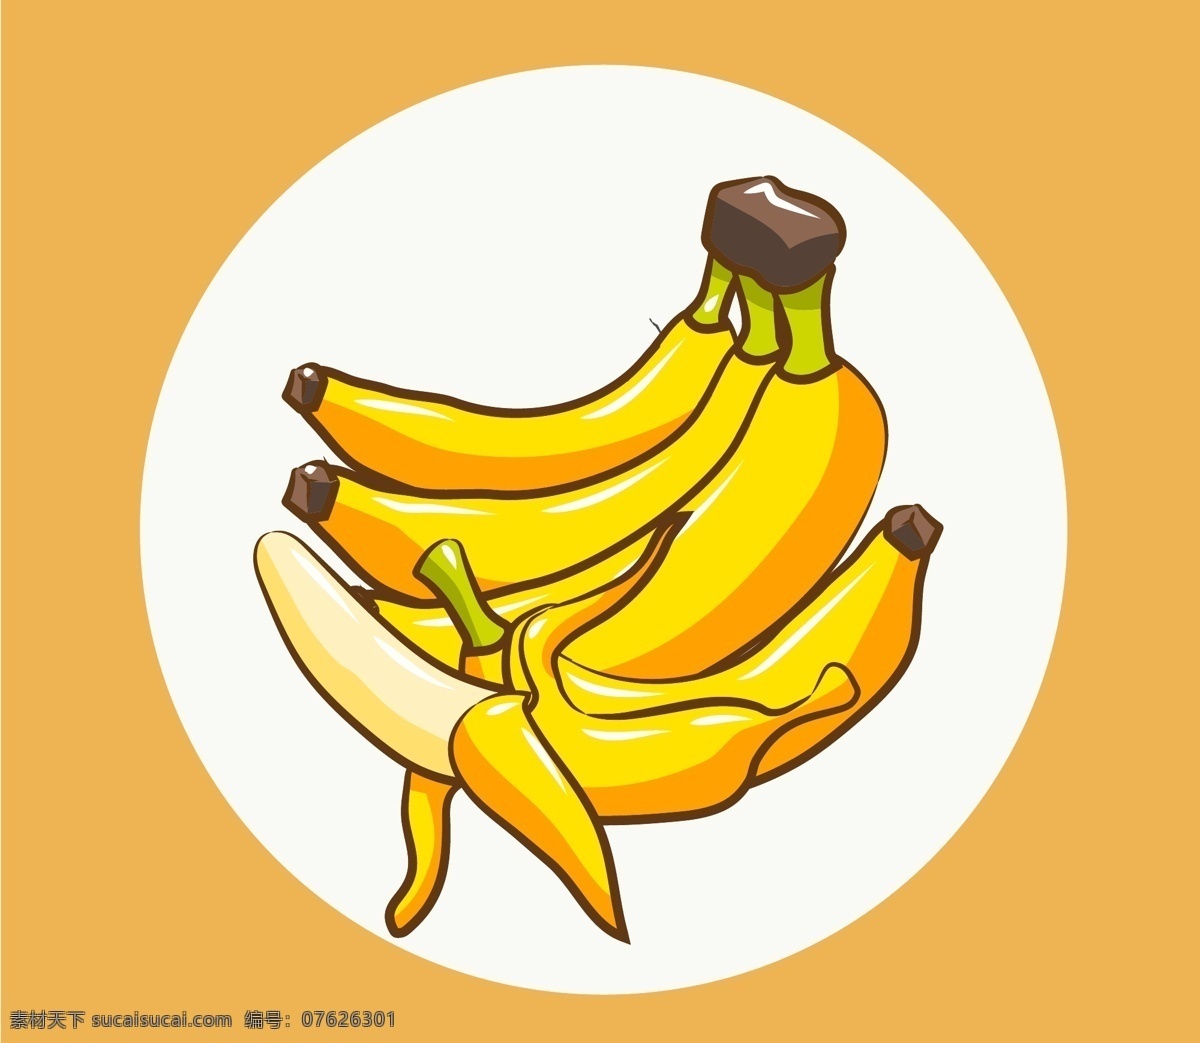 卡通香蕉 手绘香蕉 矢量香蕉 香蕉 简笔 手绘 夏季 手绘卡通素材 水彩 元素